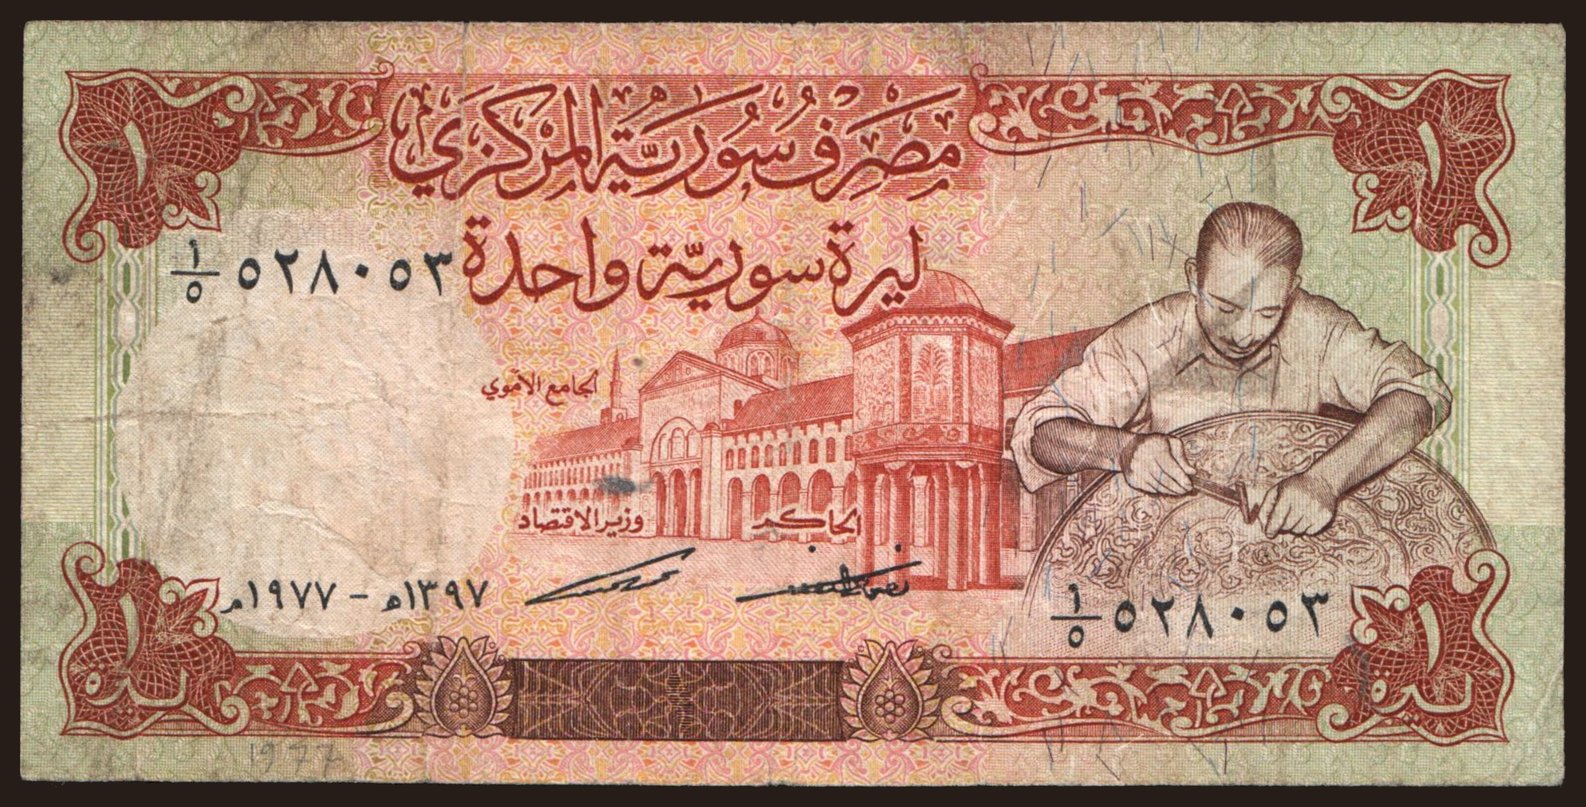 1 pound, 1977